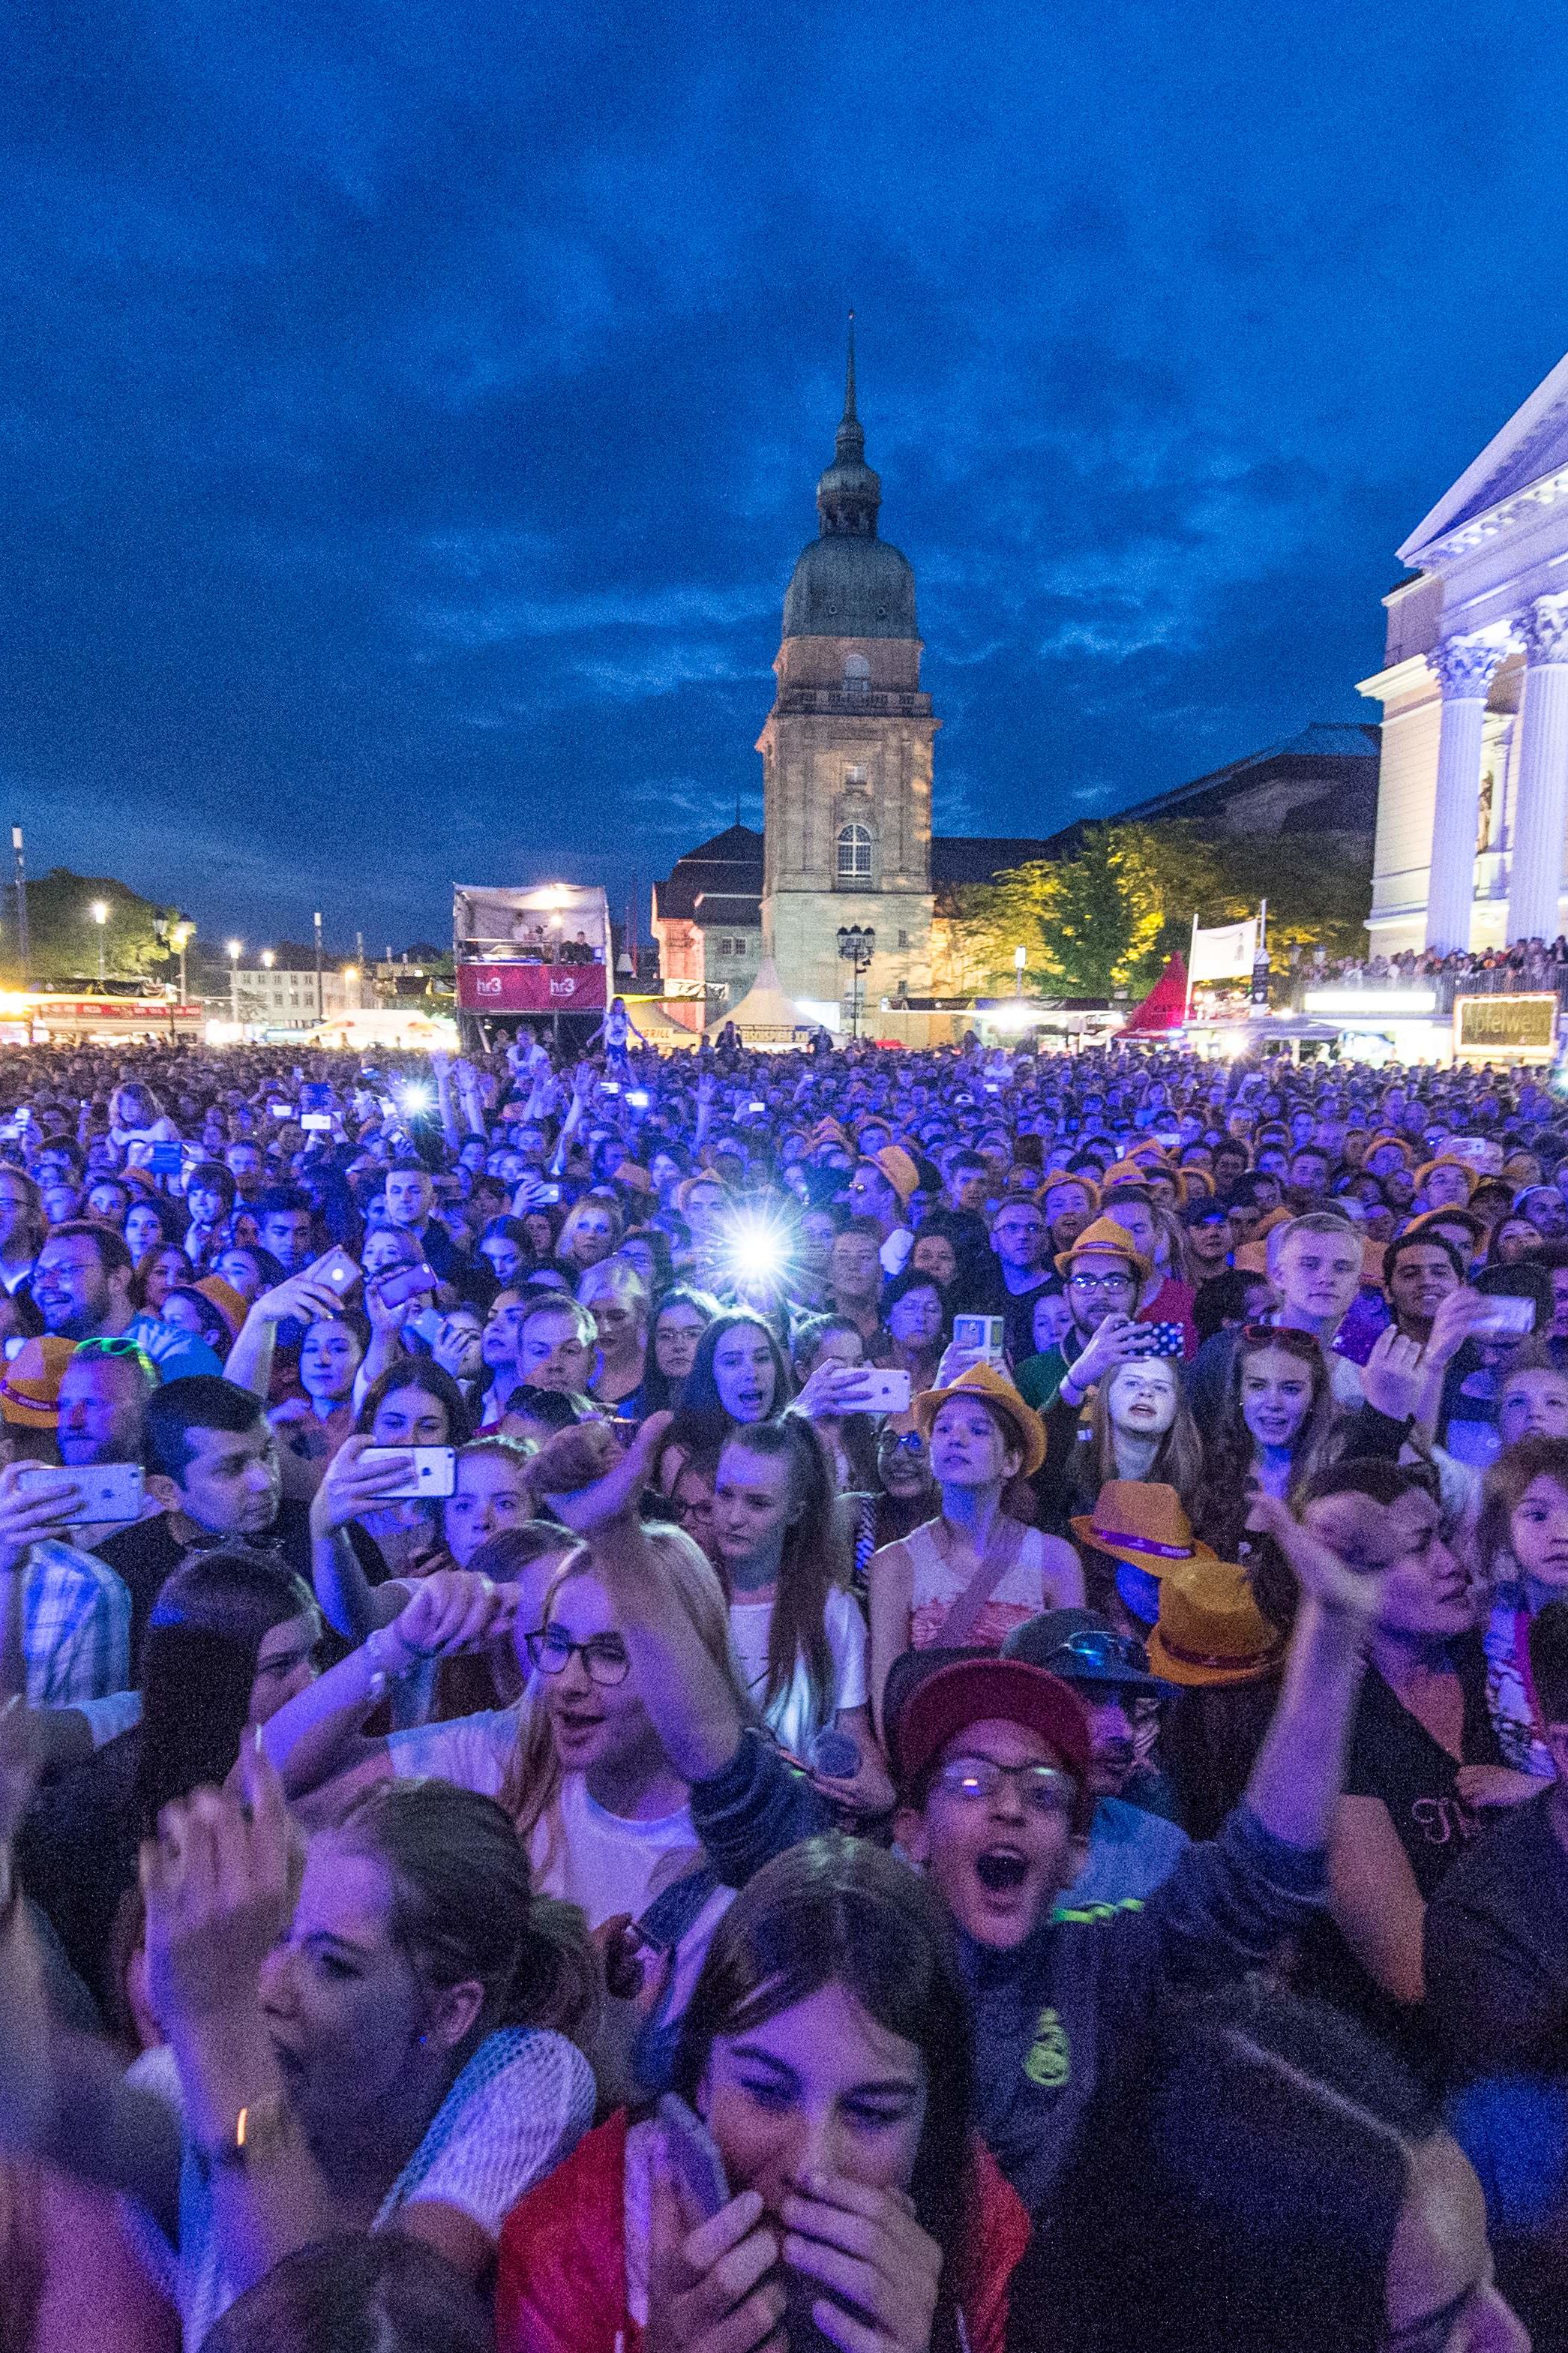 Schlossgrabenfest: 26 women report sexual assault at German concert | CNN